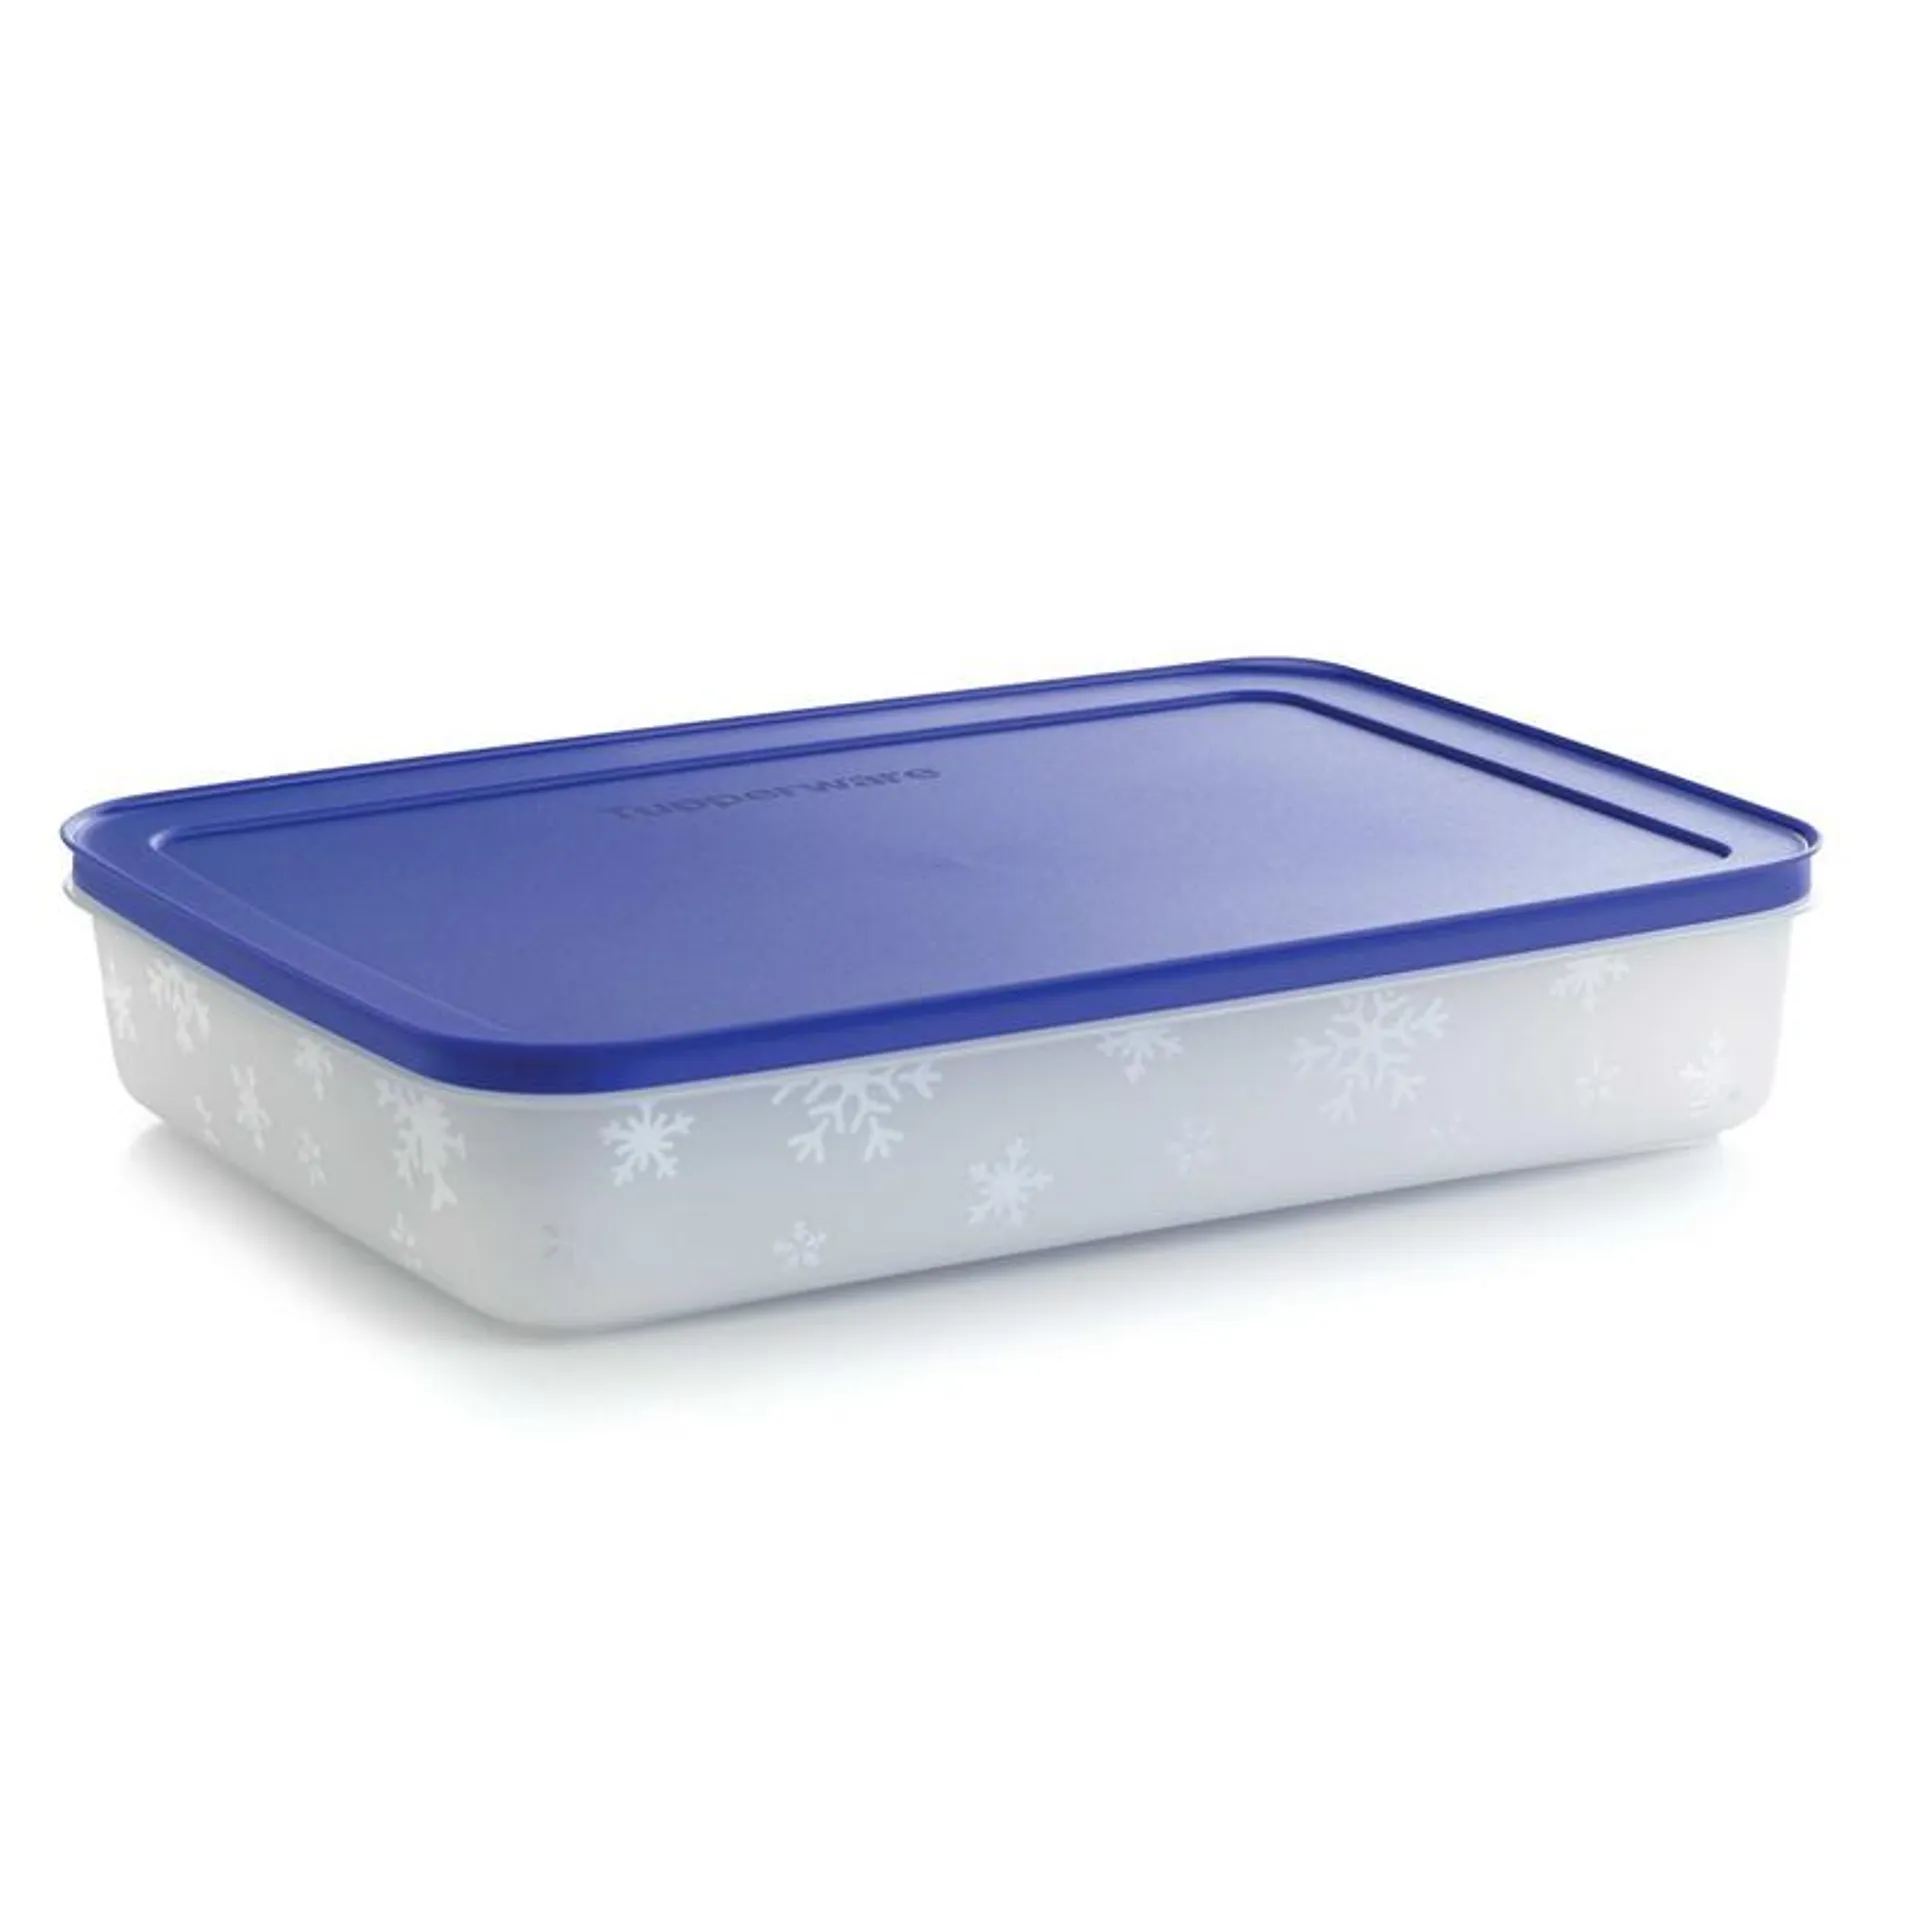 La boîte Igloo 2,25 l est idéal pour conserver vos aliments !